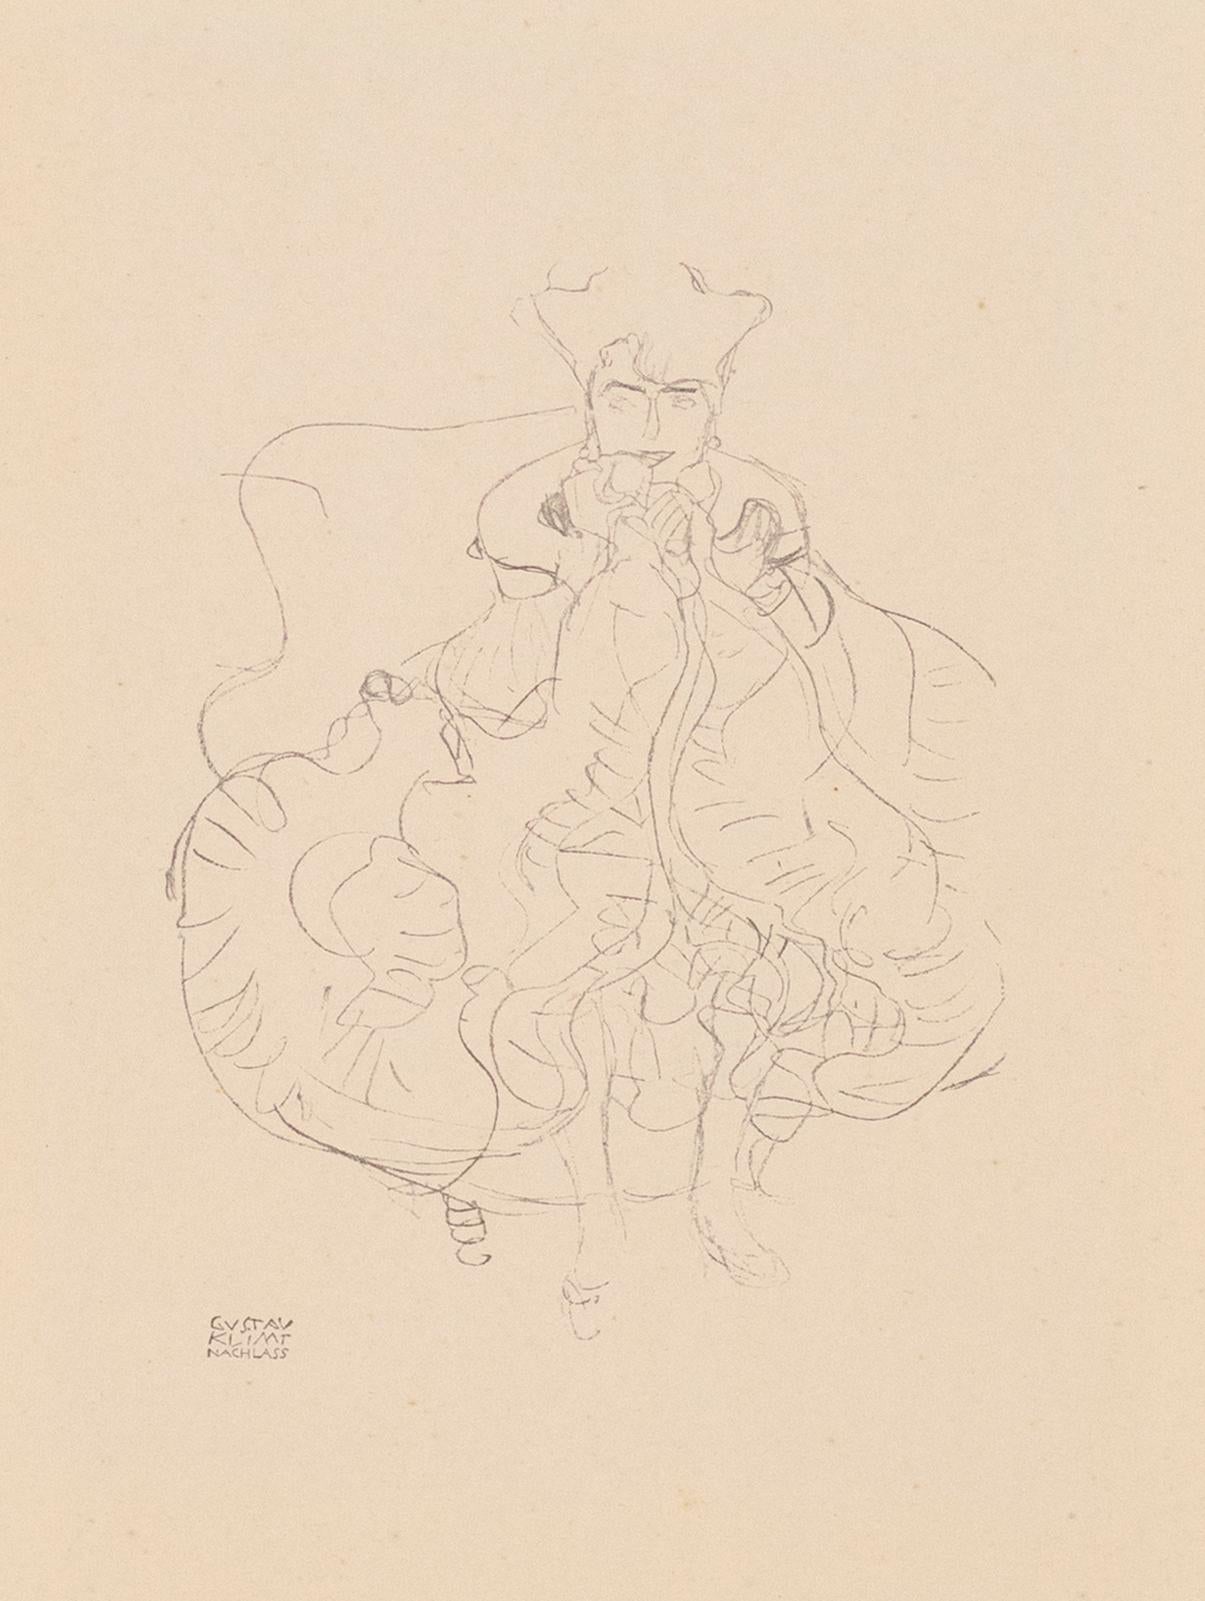 Seated woman, Gustav Klimt Handzeichnungen (Sketch) collotype lithograph, 1922